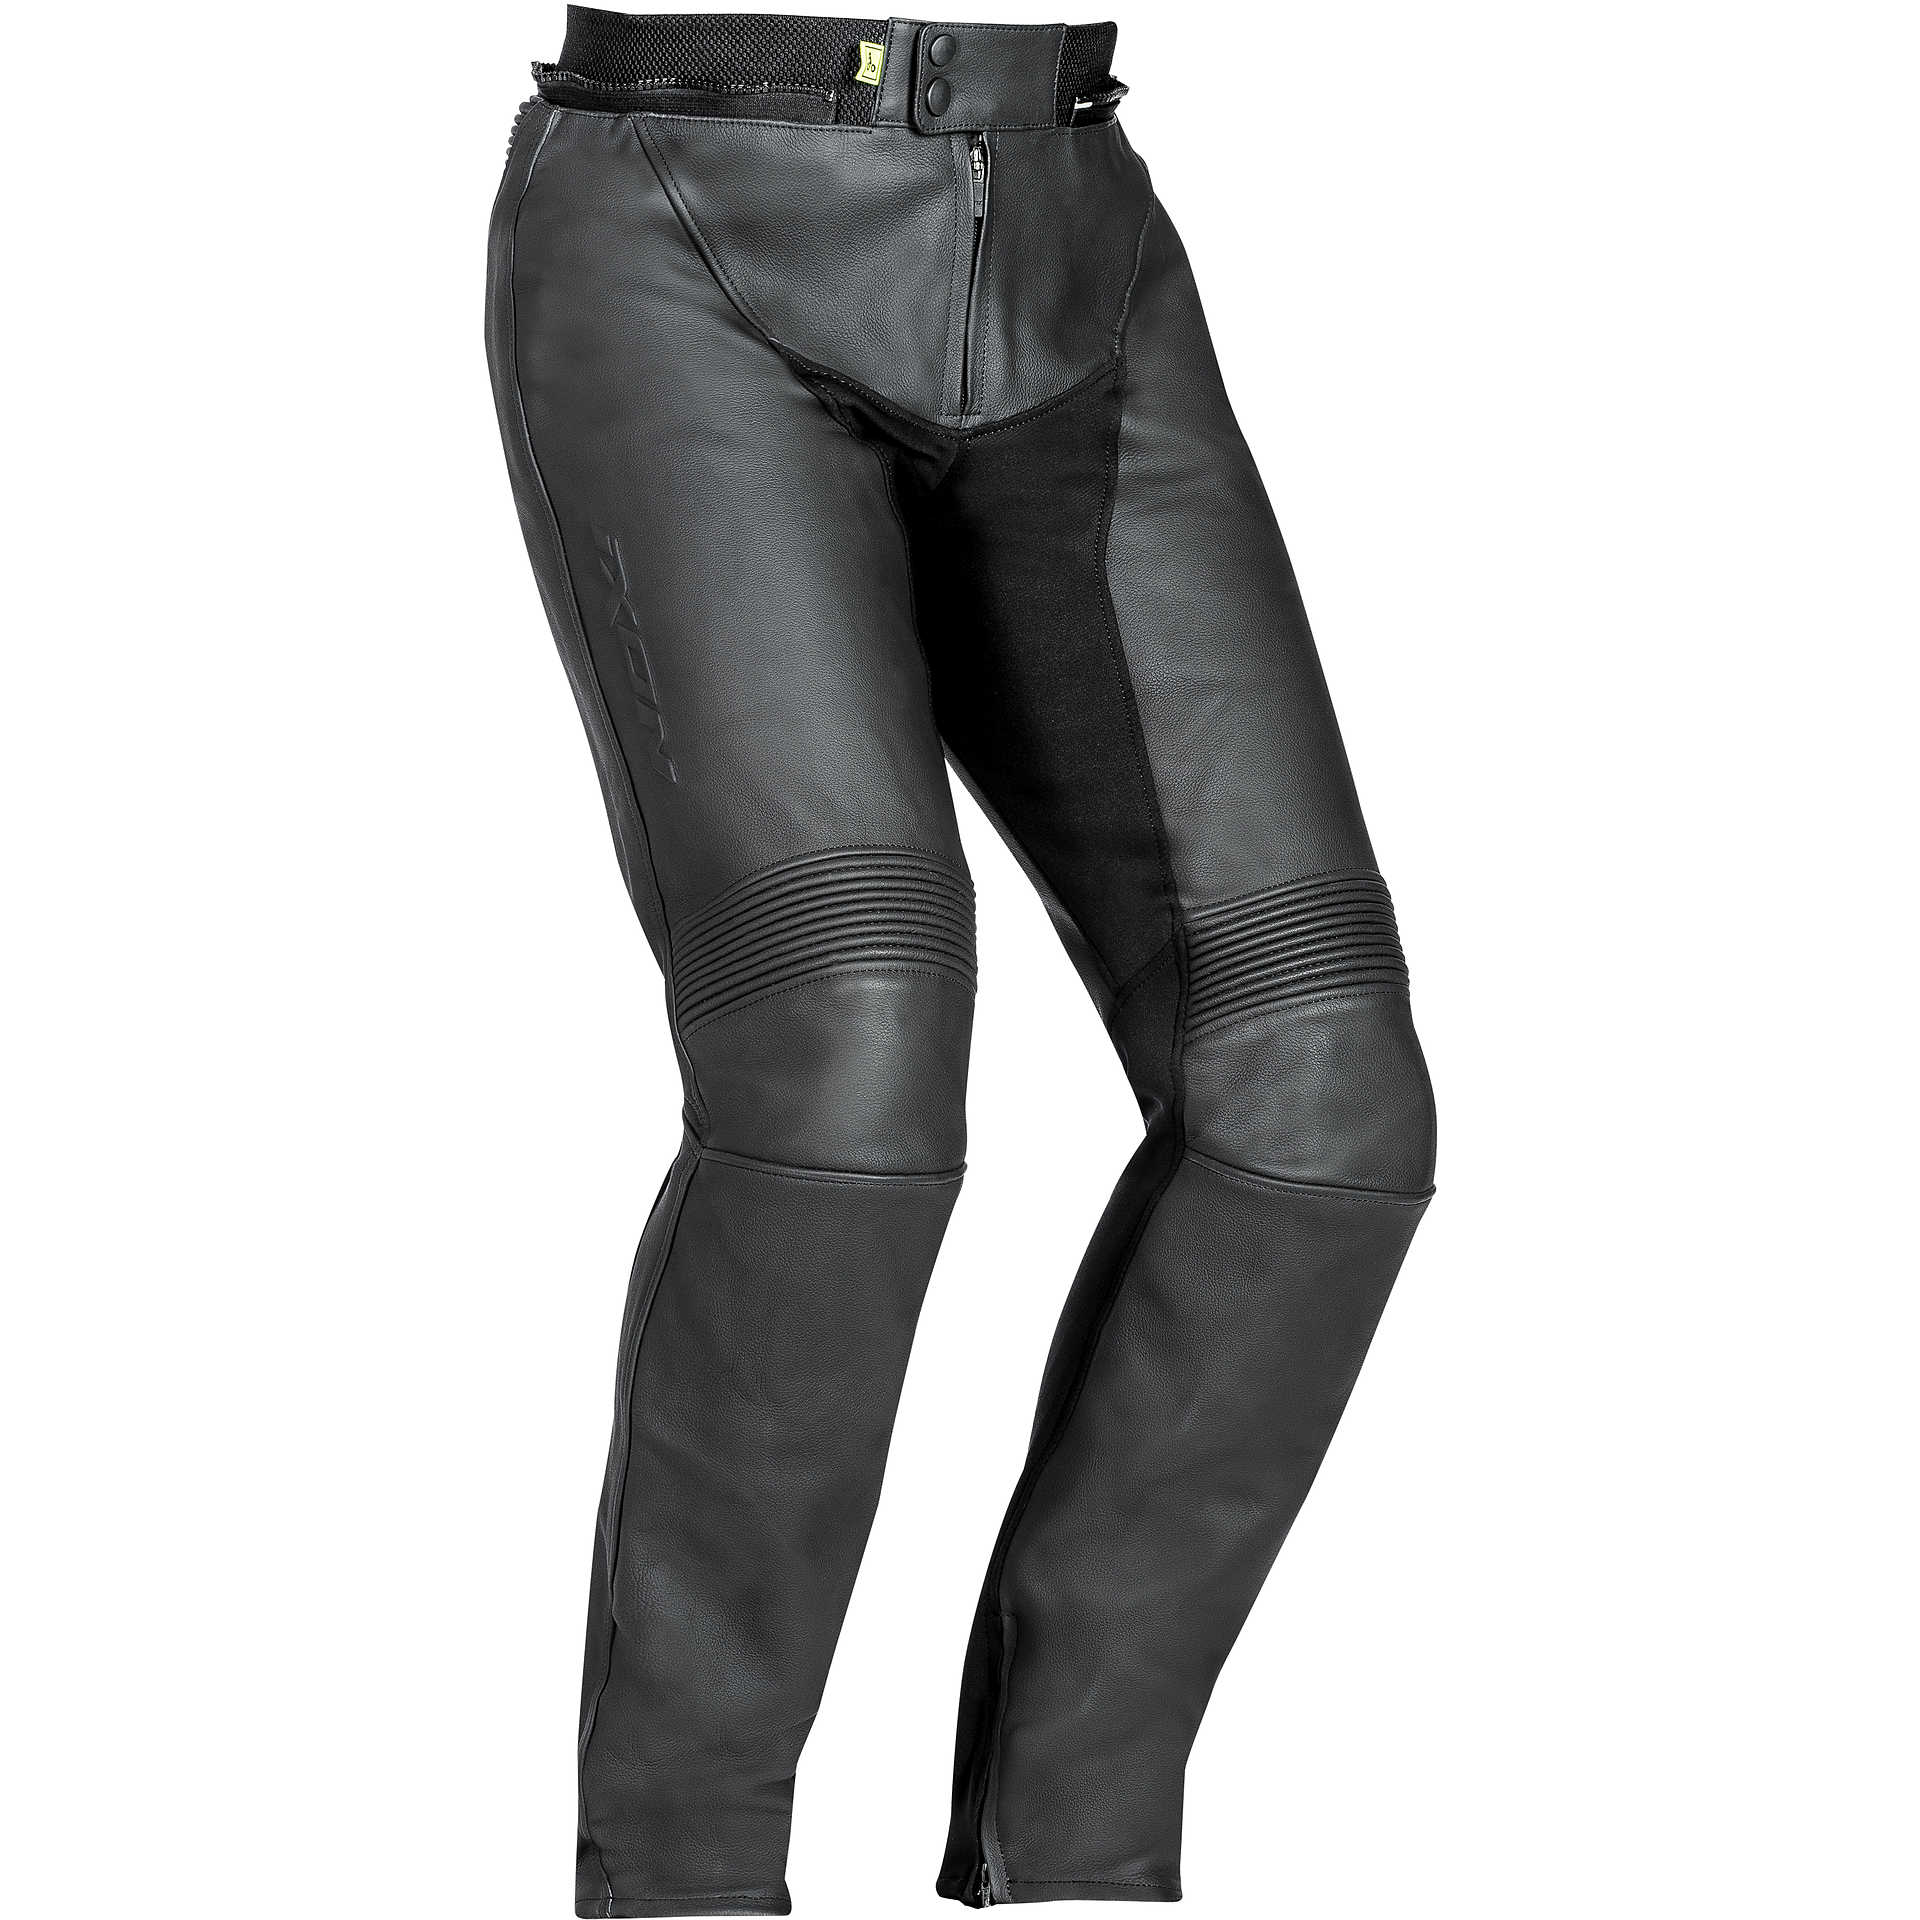 HEIN GERICKE Ladies Leather Motorcycle Trousers UK 12 = 30"- 31"  waist (LUB36) | eBay